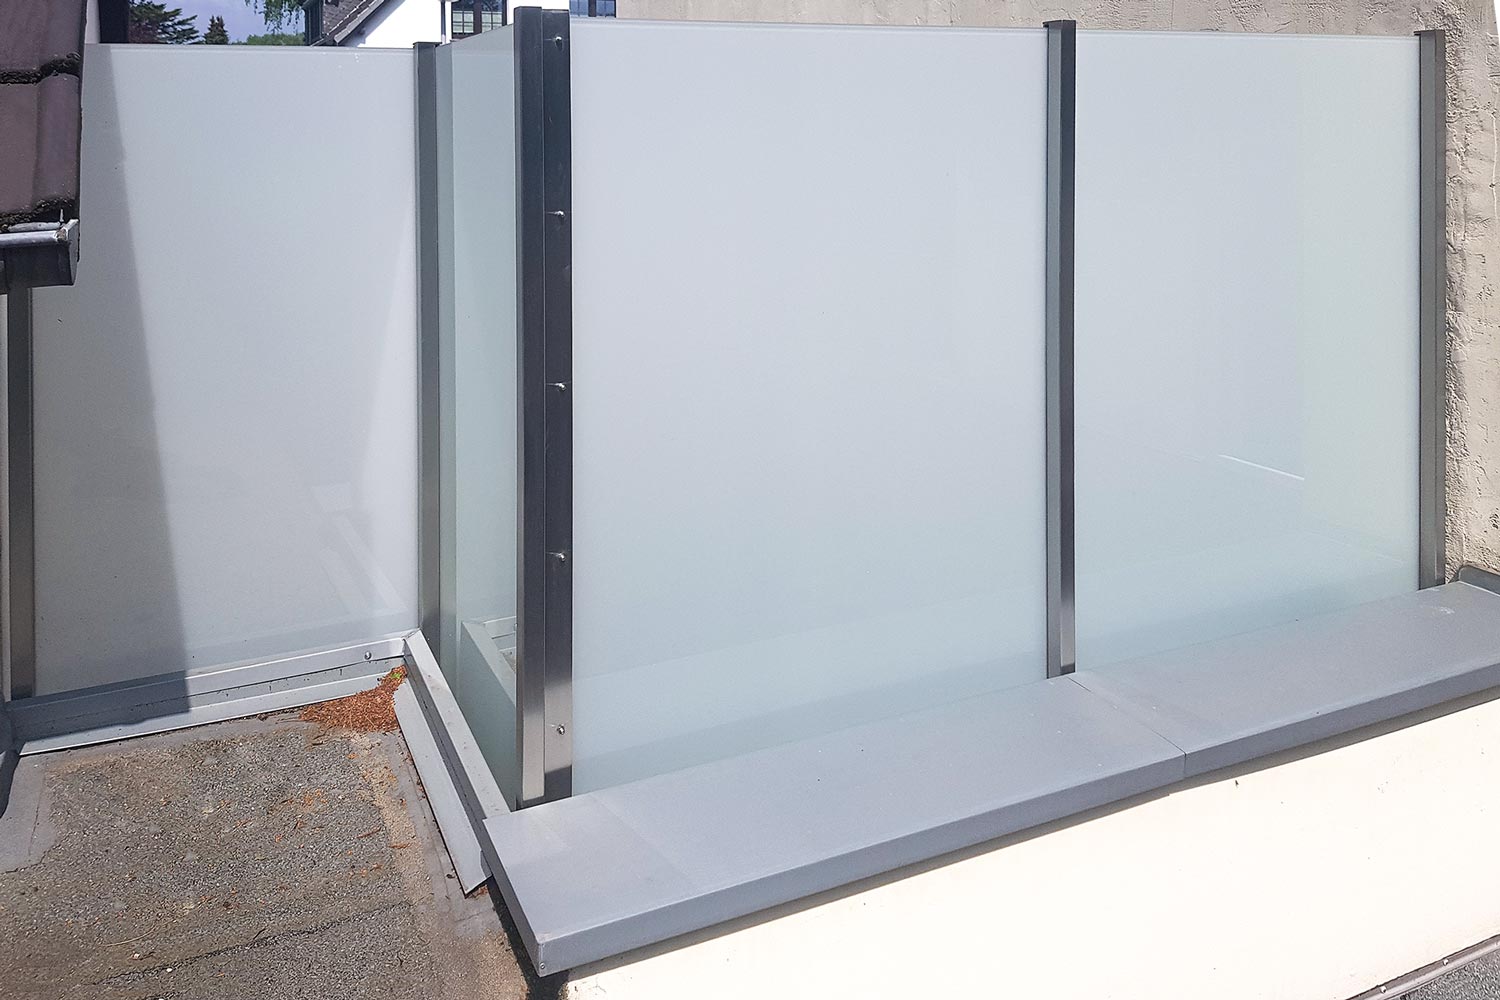 Trennwand aus Edelstahl & Glas, geplant und gebaut von der Edelstahlschlosserei Nappenfeld aus Mühlheim